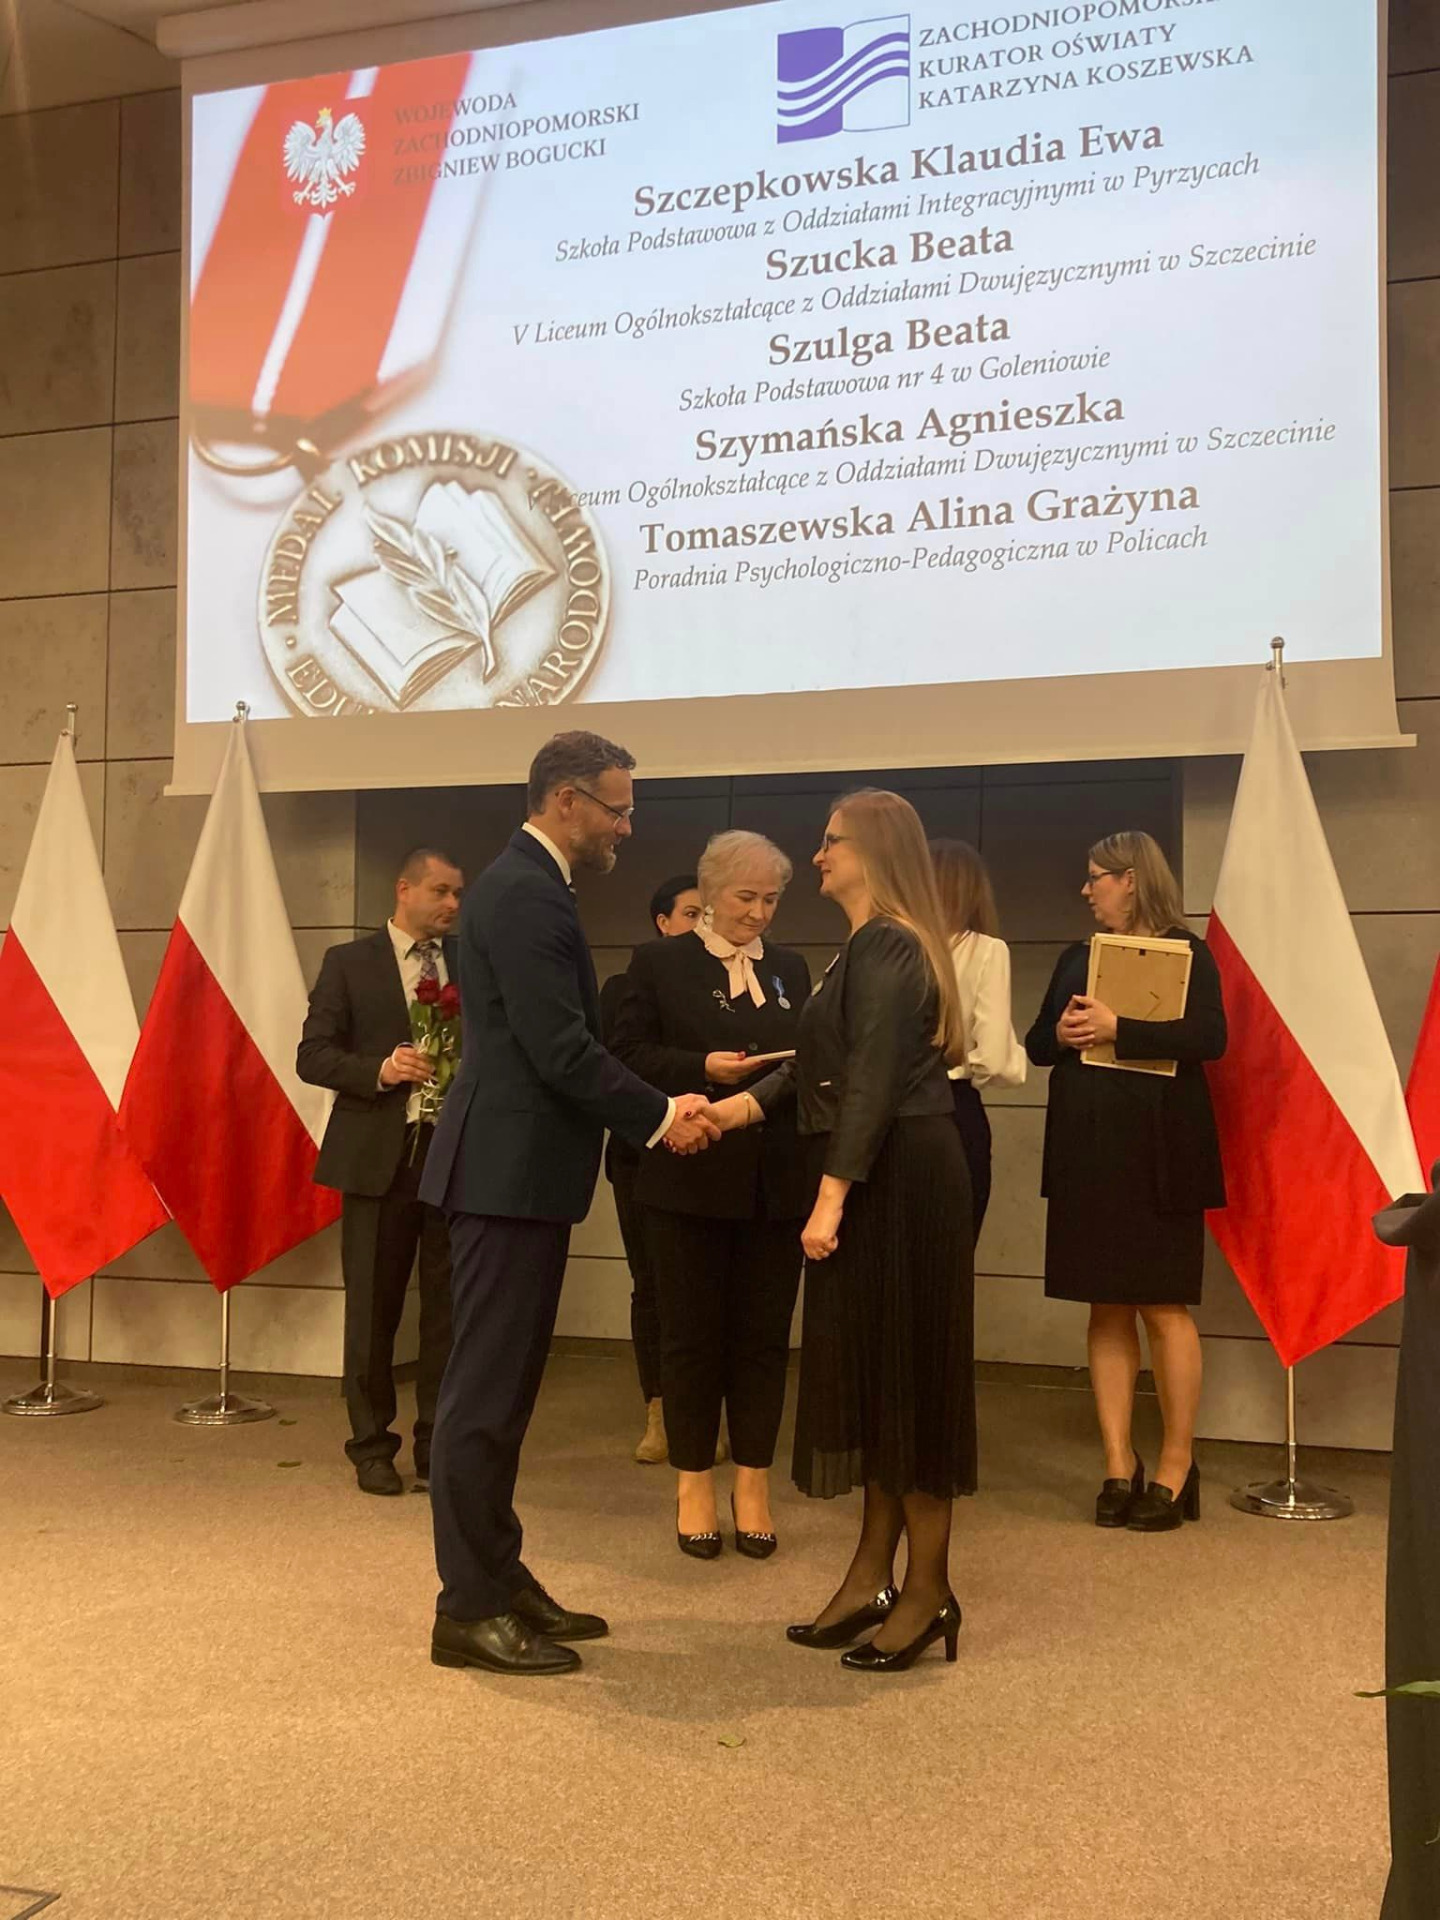 Wojewoda zachodniopomorski wręcza pani Klaudii Szczepkowskiej medal Komisji Edukacji Narodowej